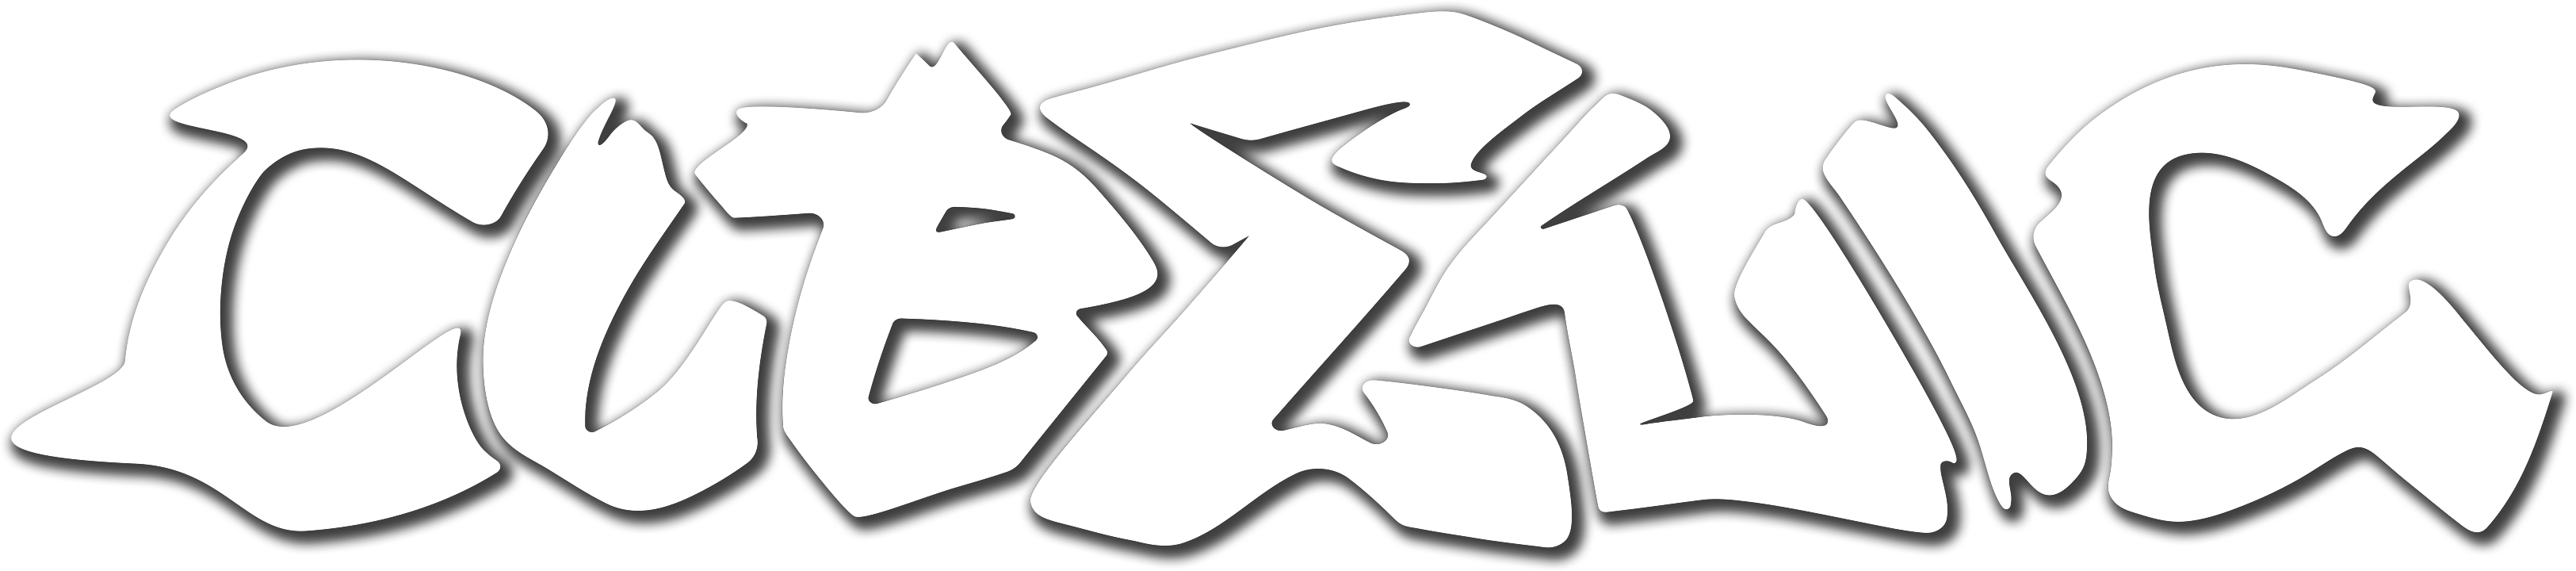 cubelic logo w/Shadow